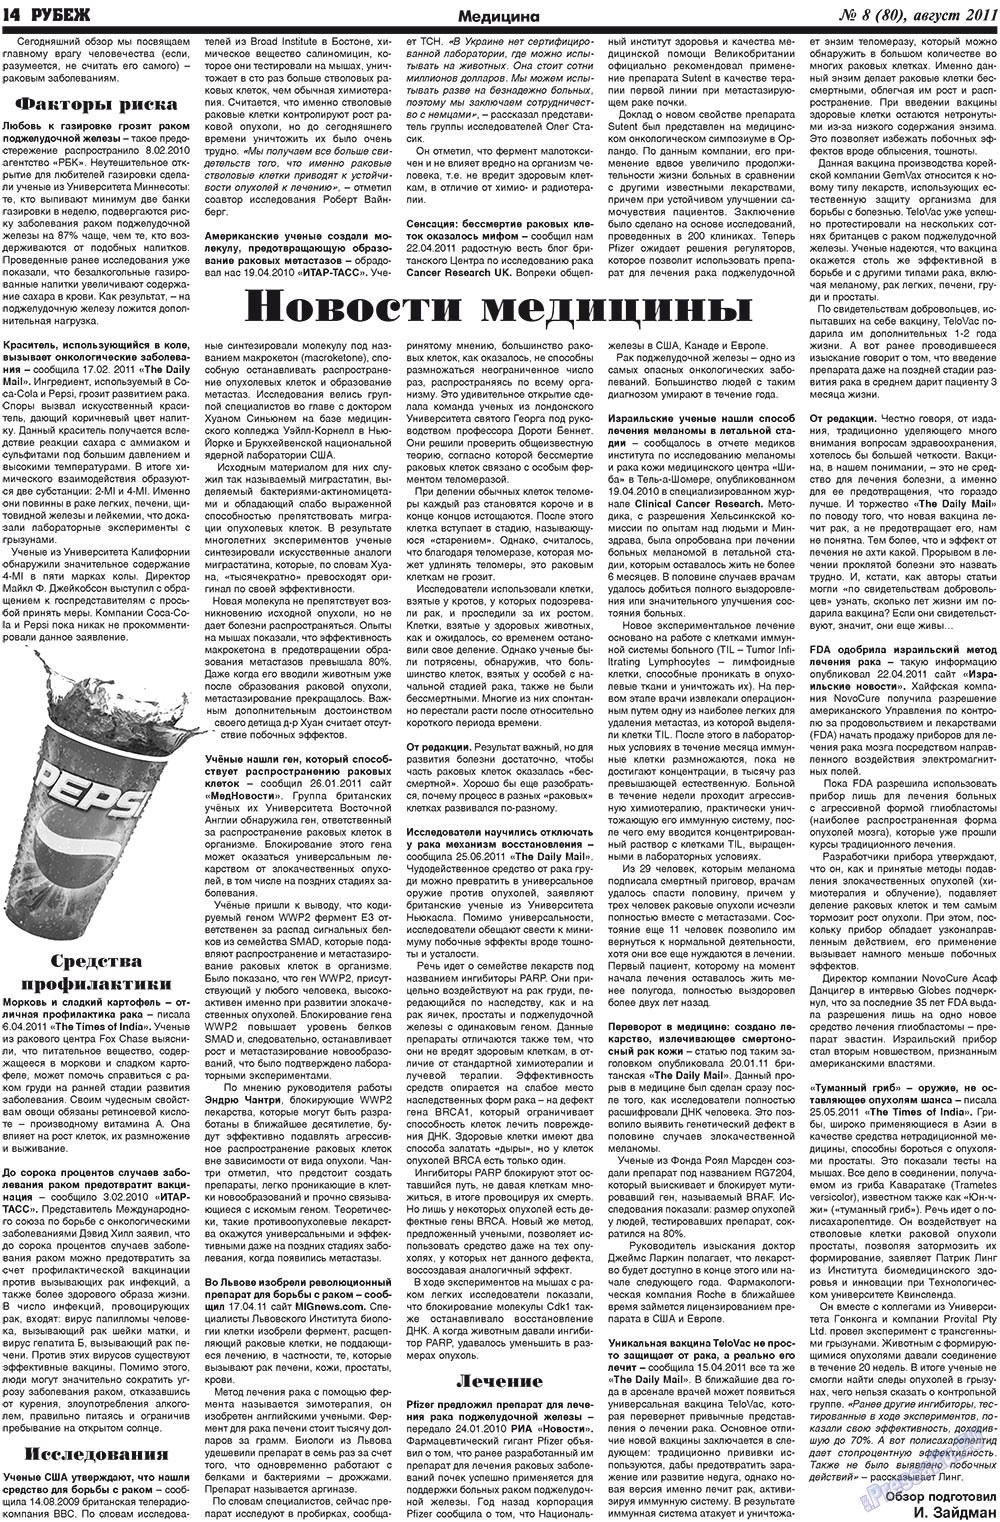 Рубеж (газета). 2011 год, номер 8, стр. 14